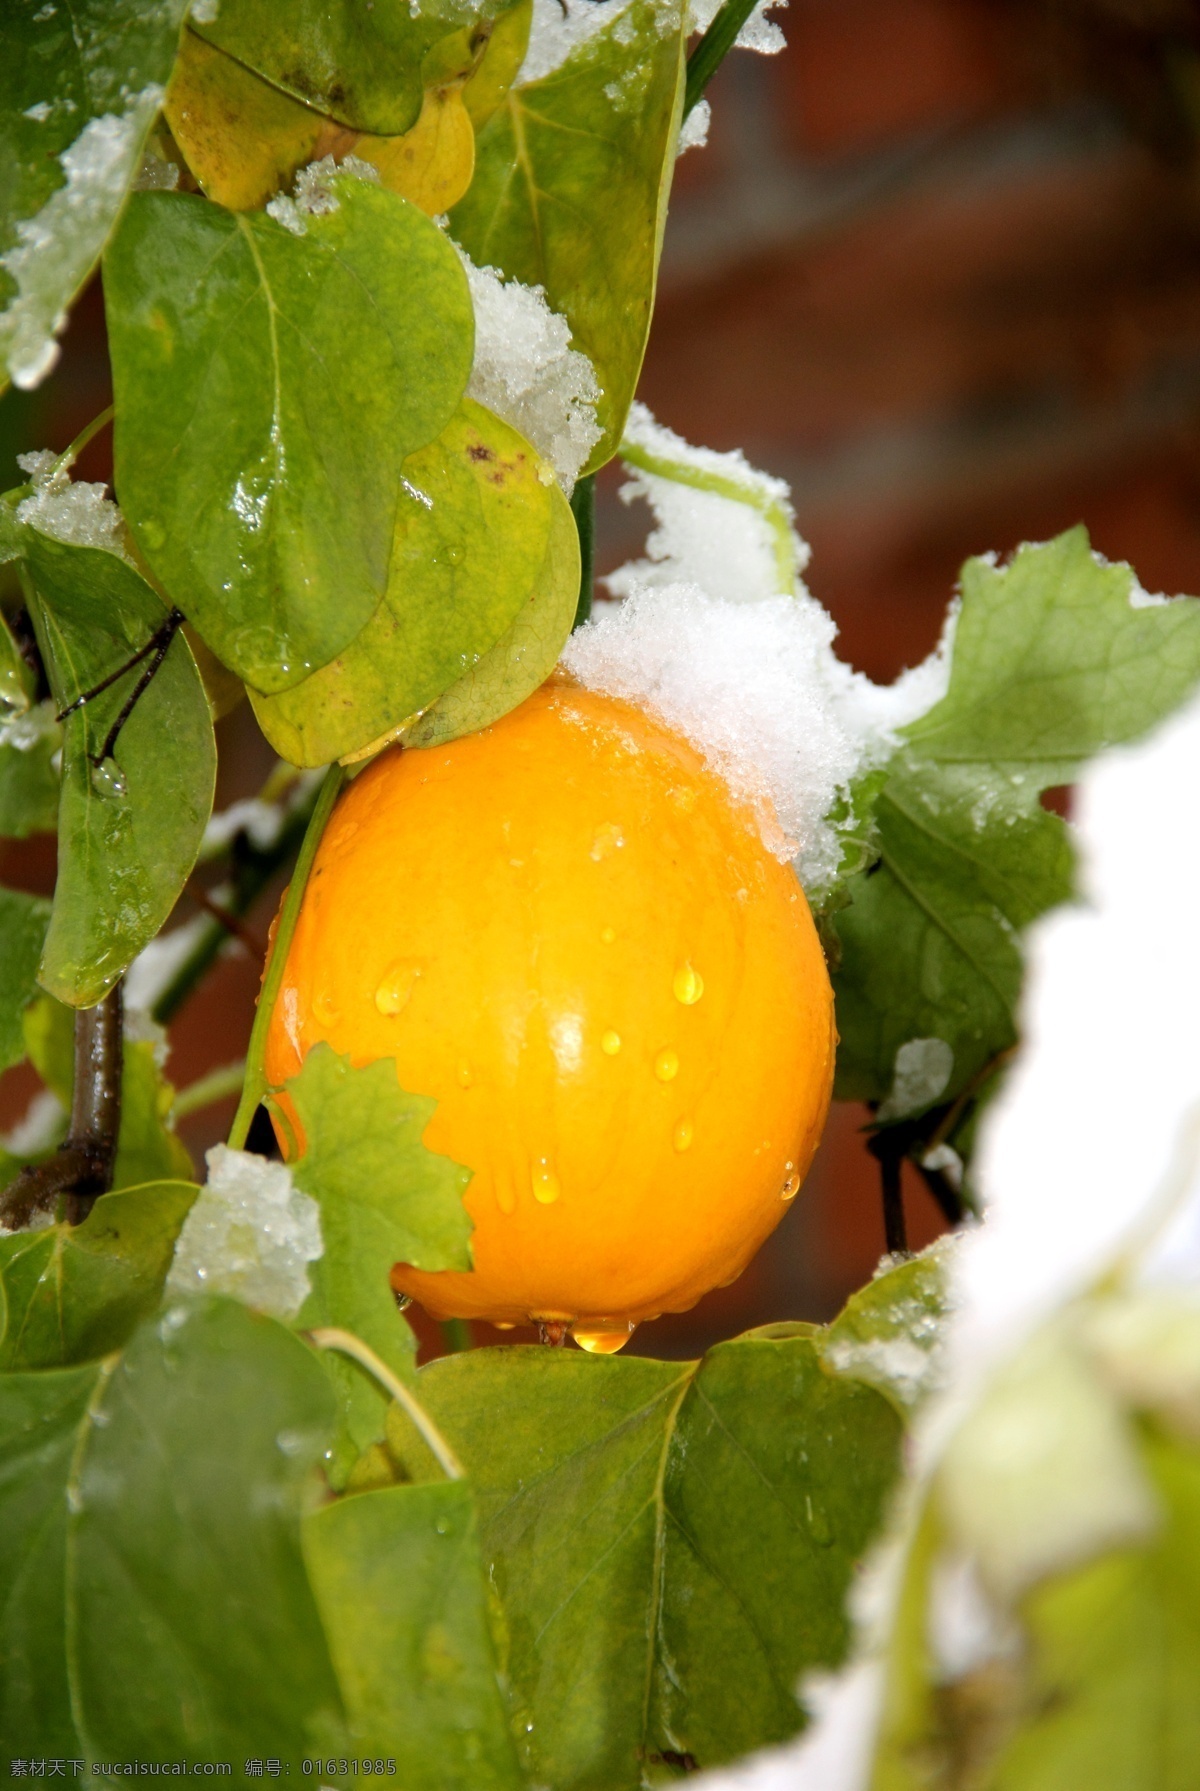 雪后 金黄色 瓜 蒌 金黄色的 瓜蒌 戴雪的瓜蒌 药材 瓜果蔬菜 生物世界 花草